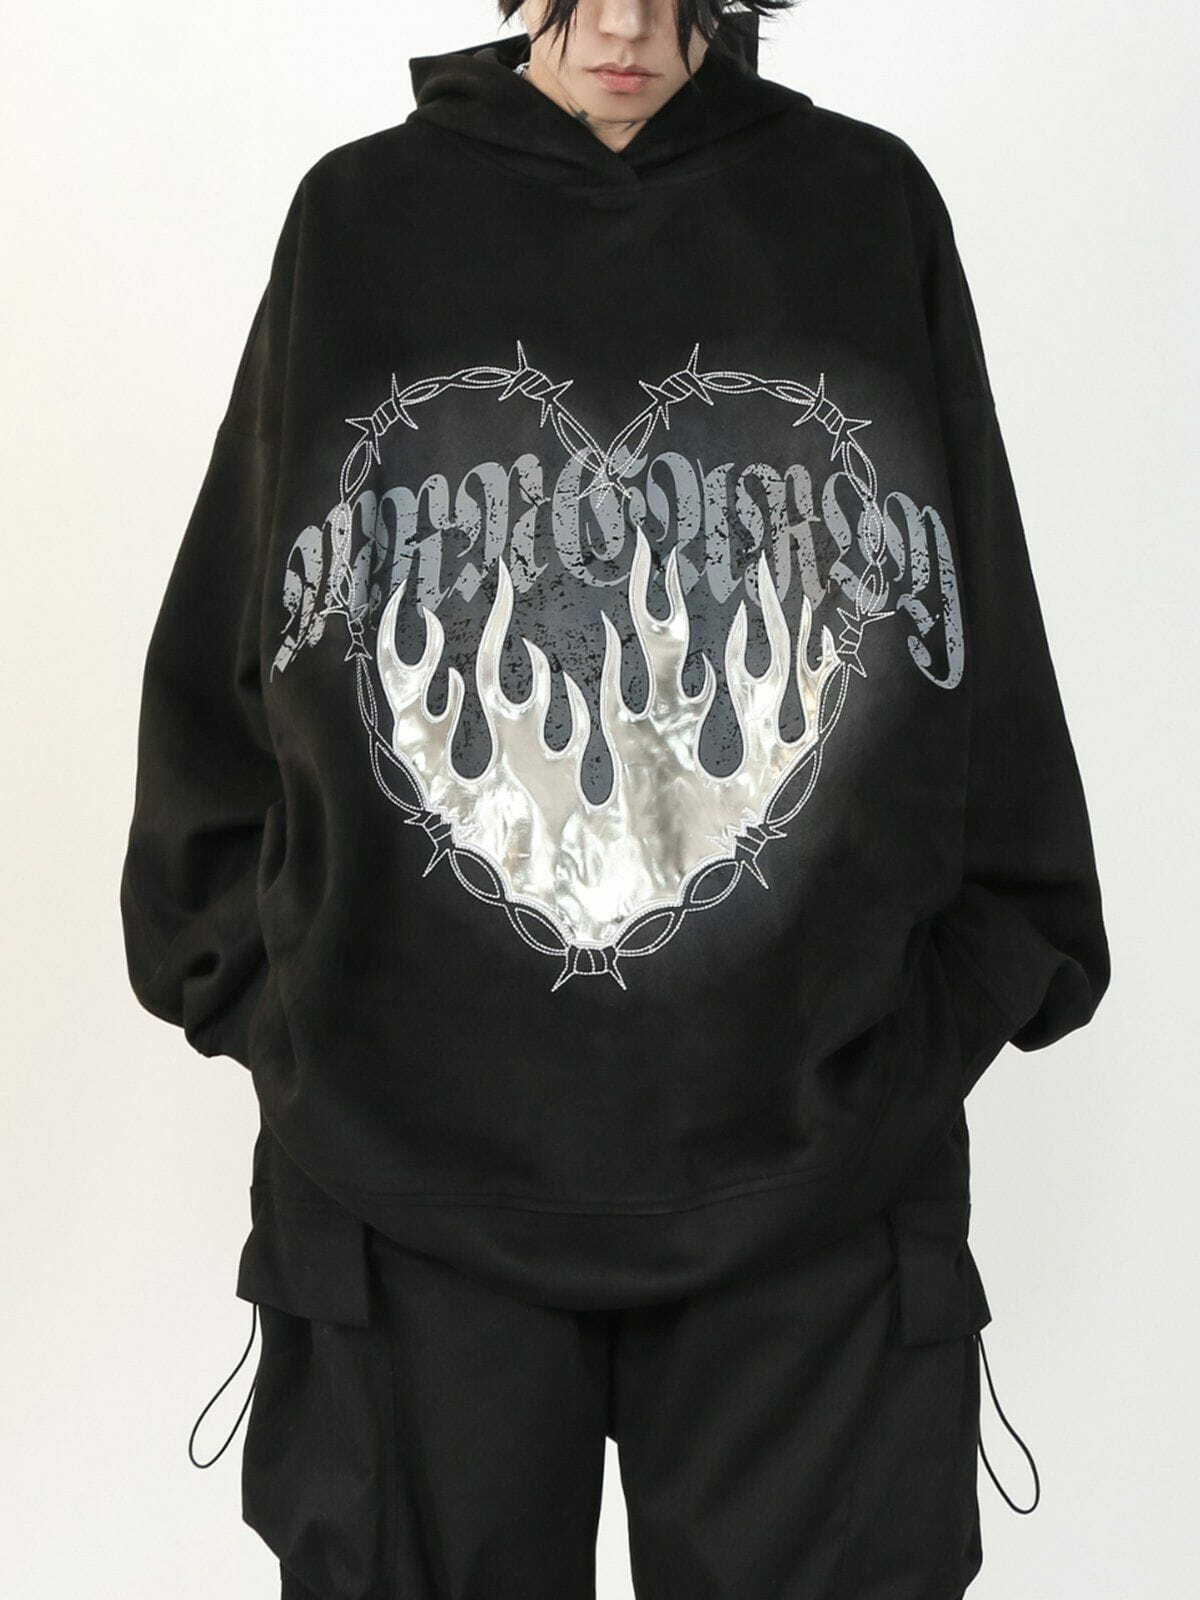 flame suede hoodie edgy & vibrant streetwear 6640